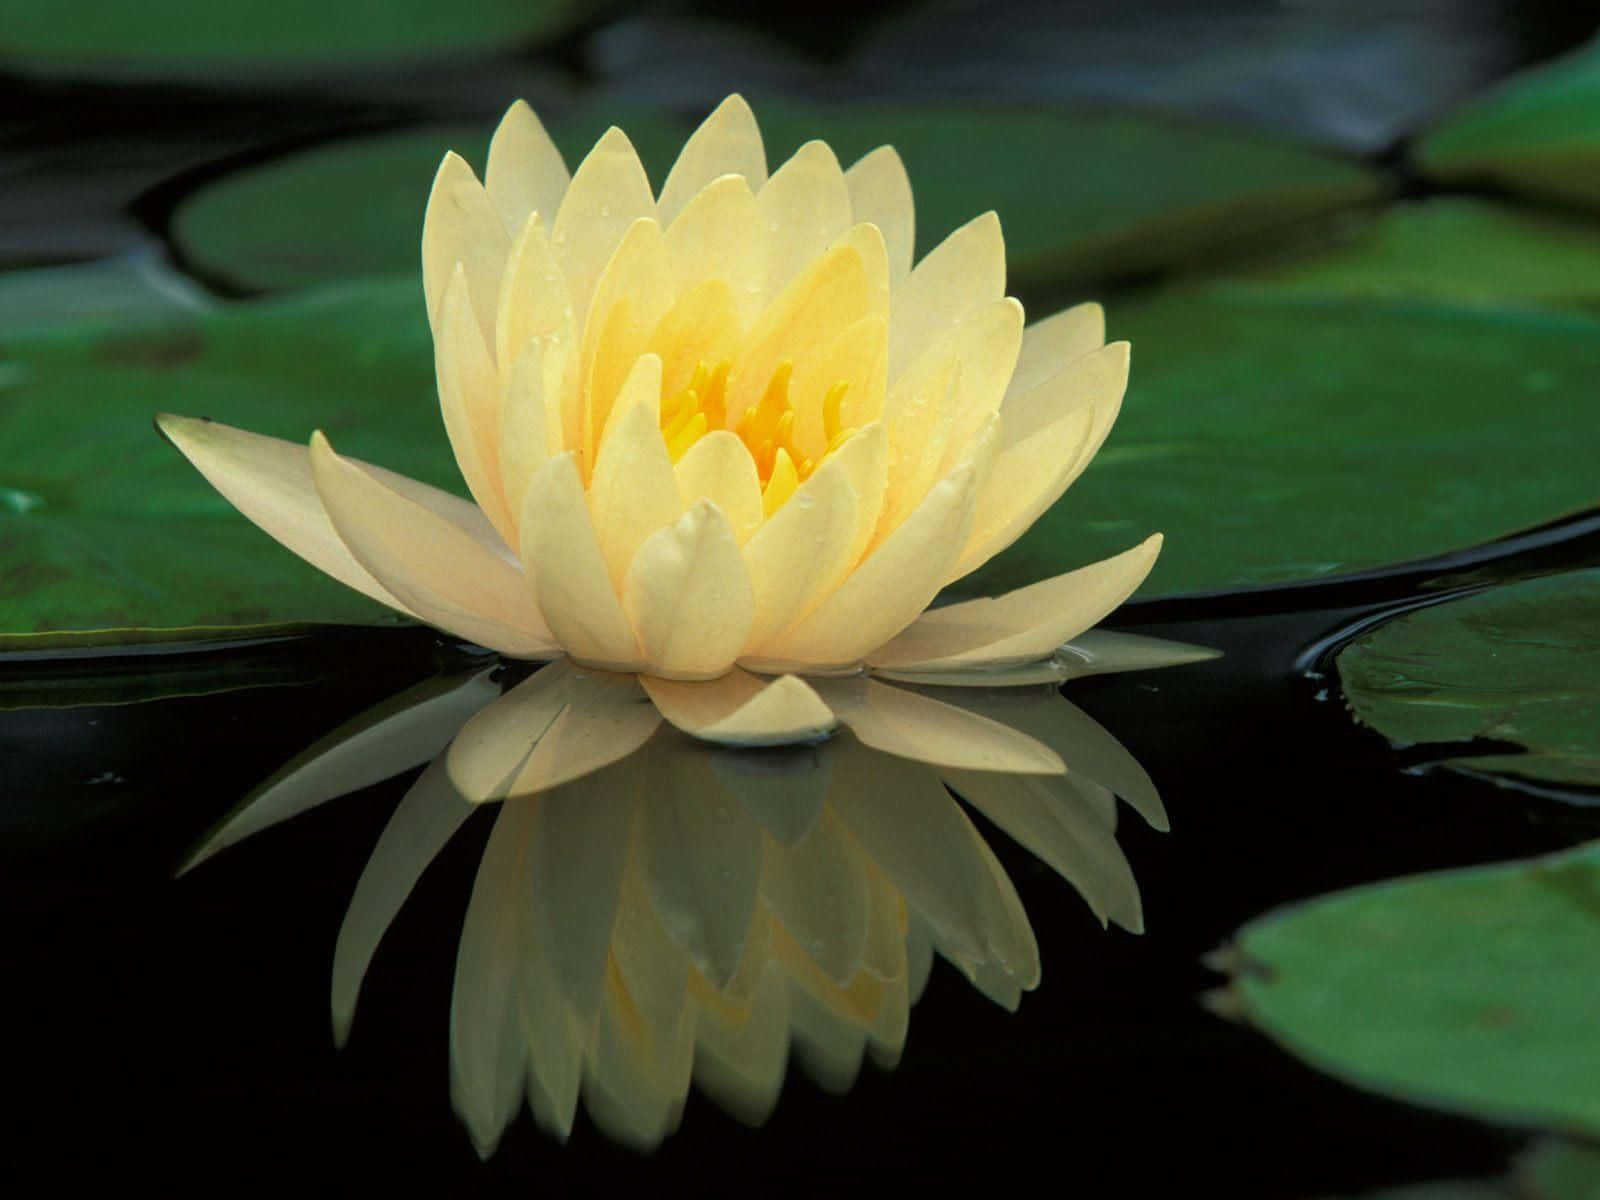 Lotusblumenbilder